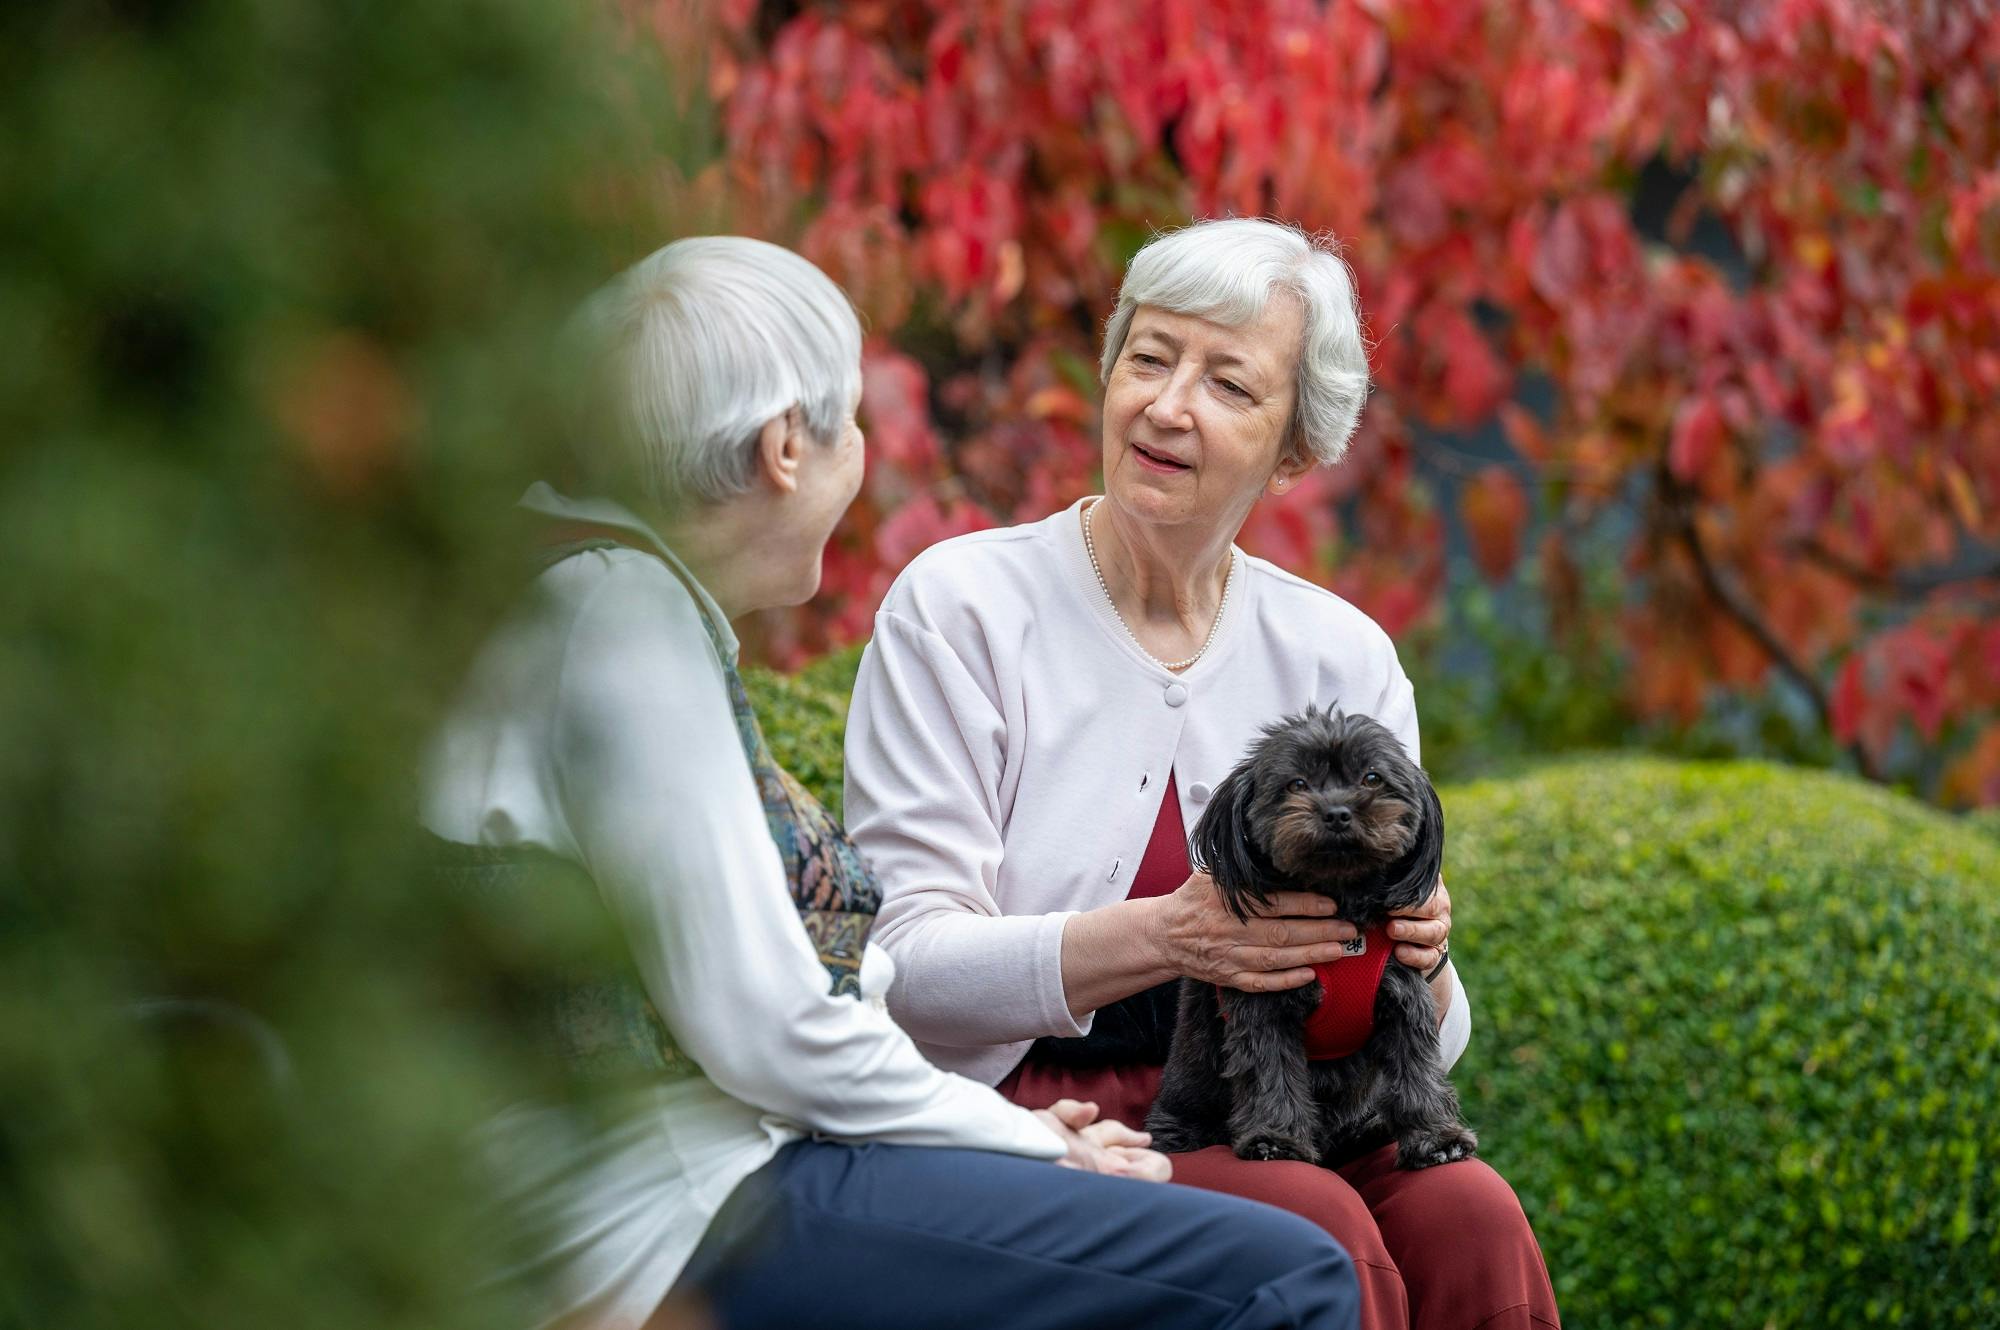 Zwei ältere Damen im Gespräch im Freien mit einem kleinen Hund auf dem Schoß vor einem Hintergrund mit herbstlichem Laub.